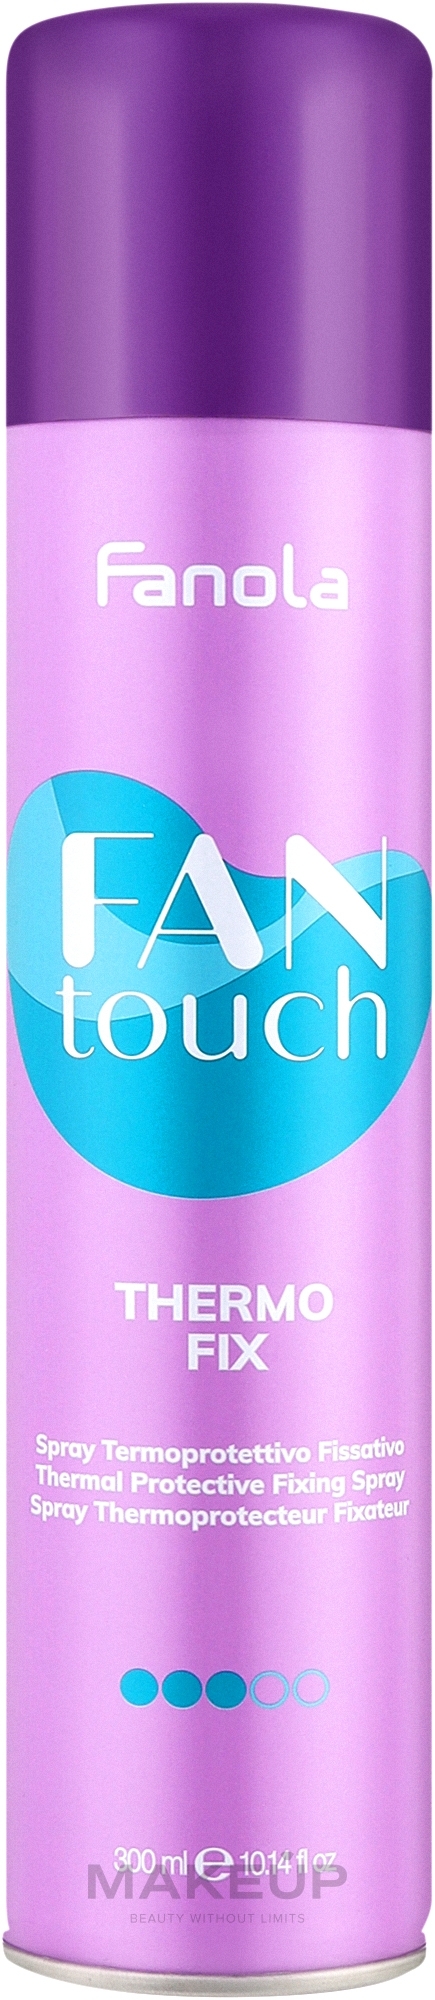 Фіксувальний термозахисний спрей для волосся - Fanola Fantouch Thermo Fix Thermoprotective Fixing Spray — фото 300ml